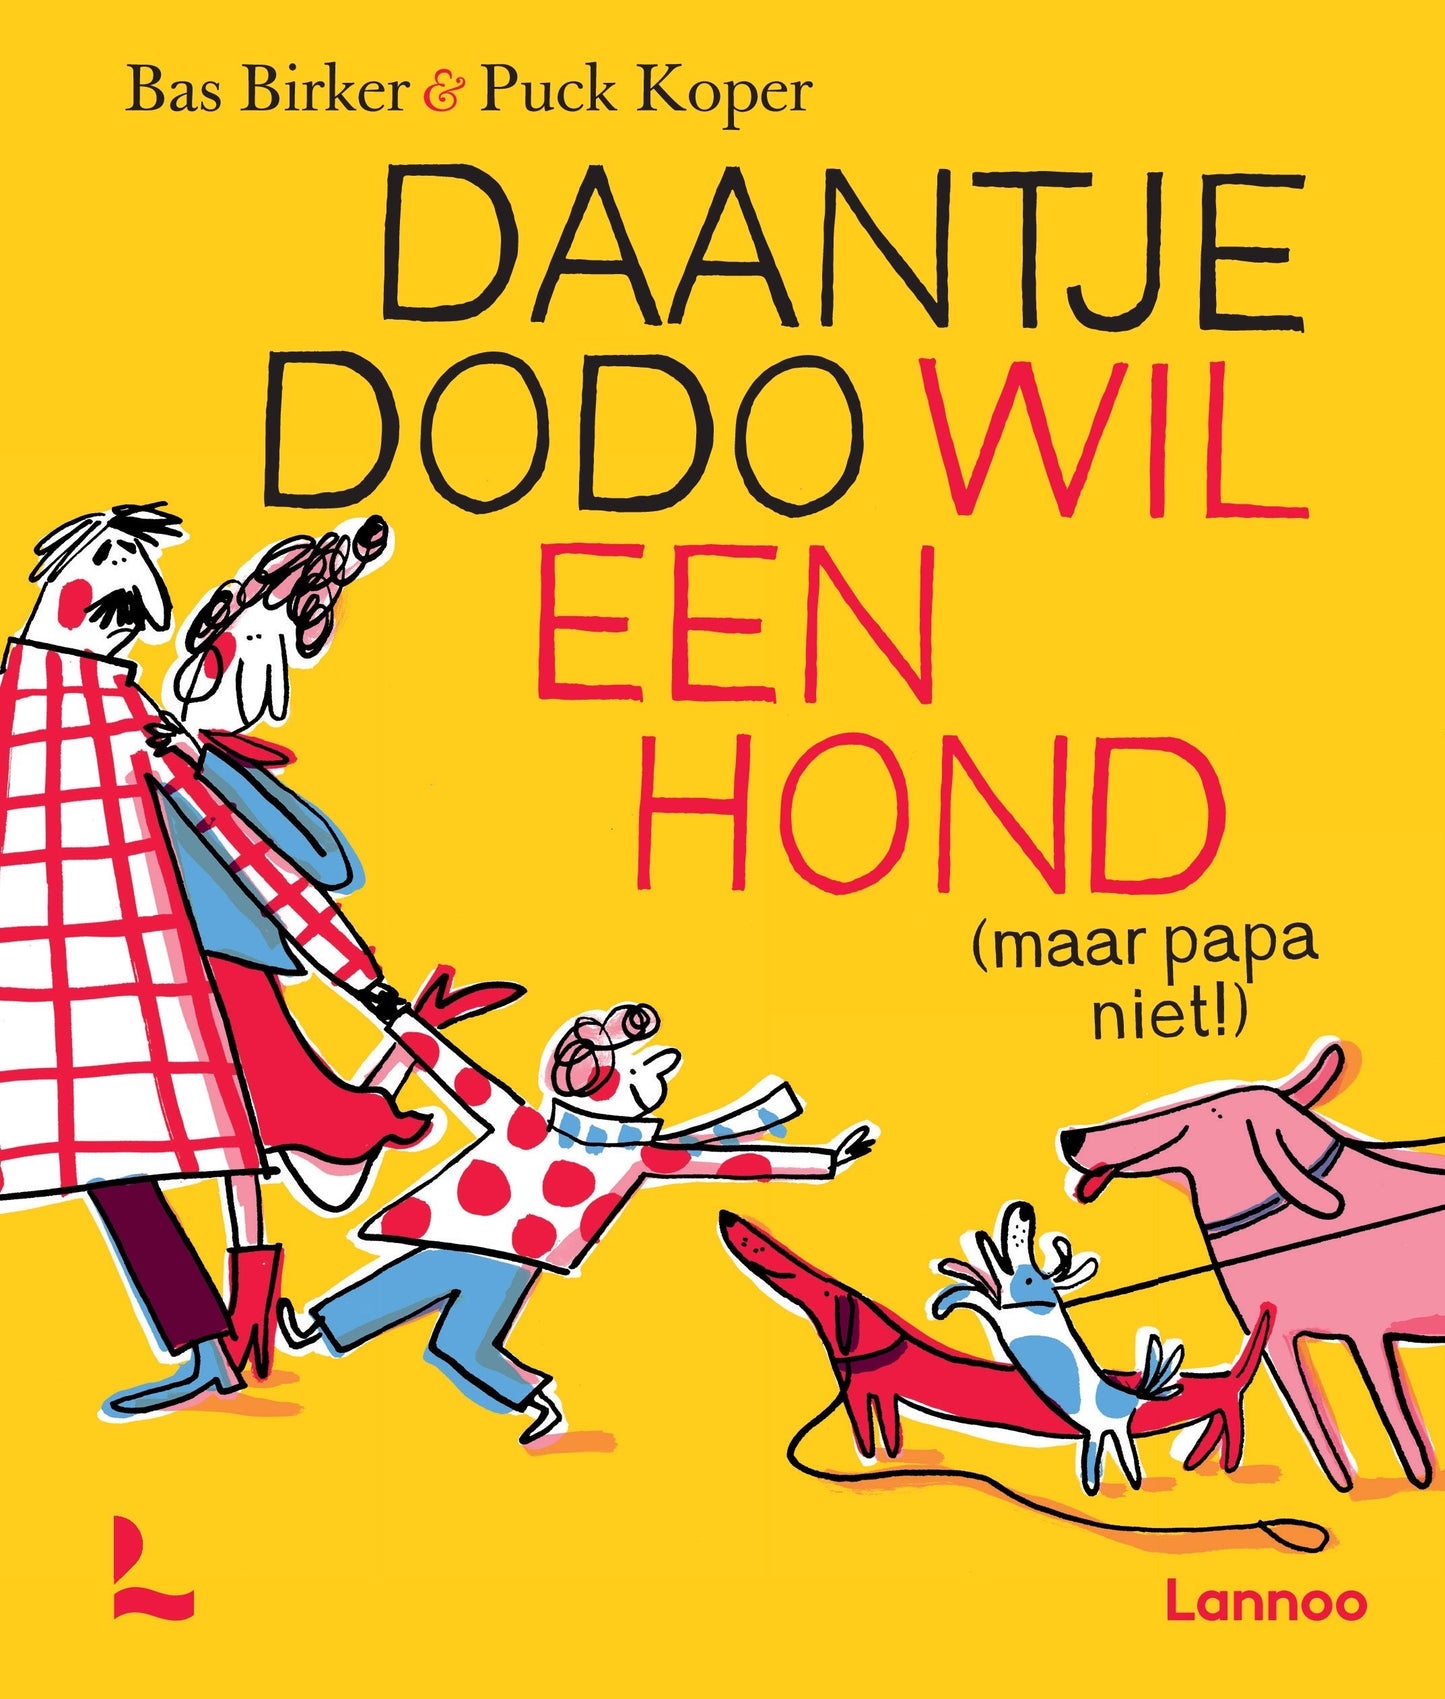 Bas Birker - "Daantje Dodo wil een hond (maar papa niet!)" (Gesigneerd kinderboek)